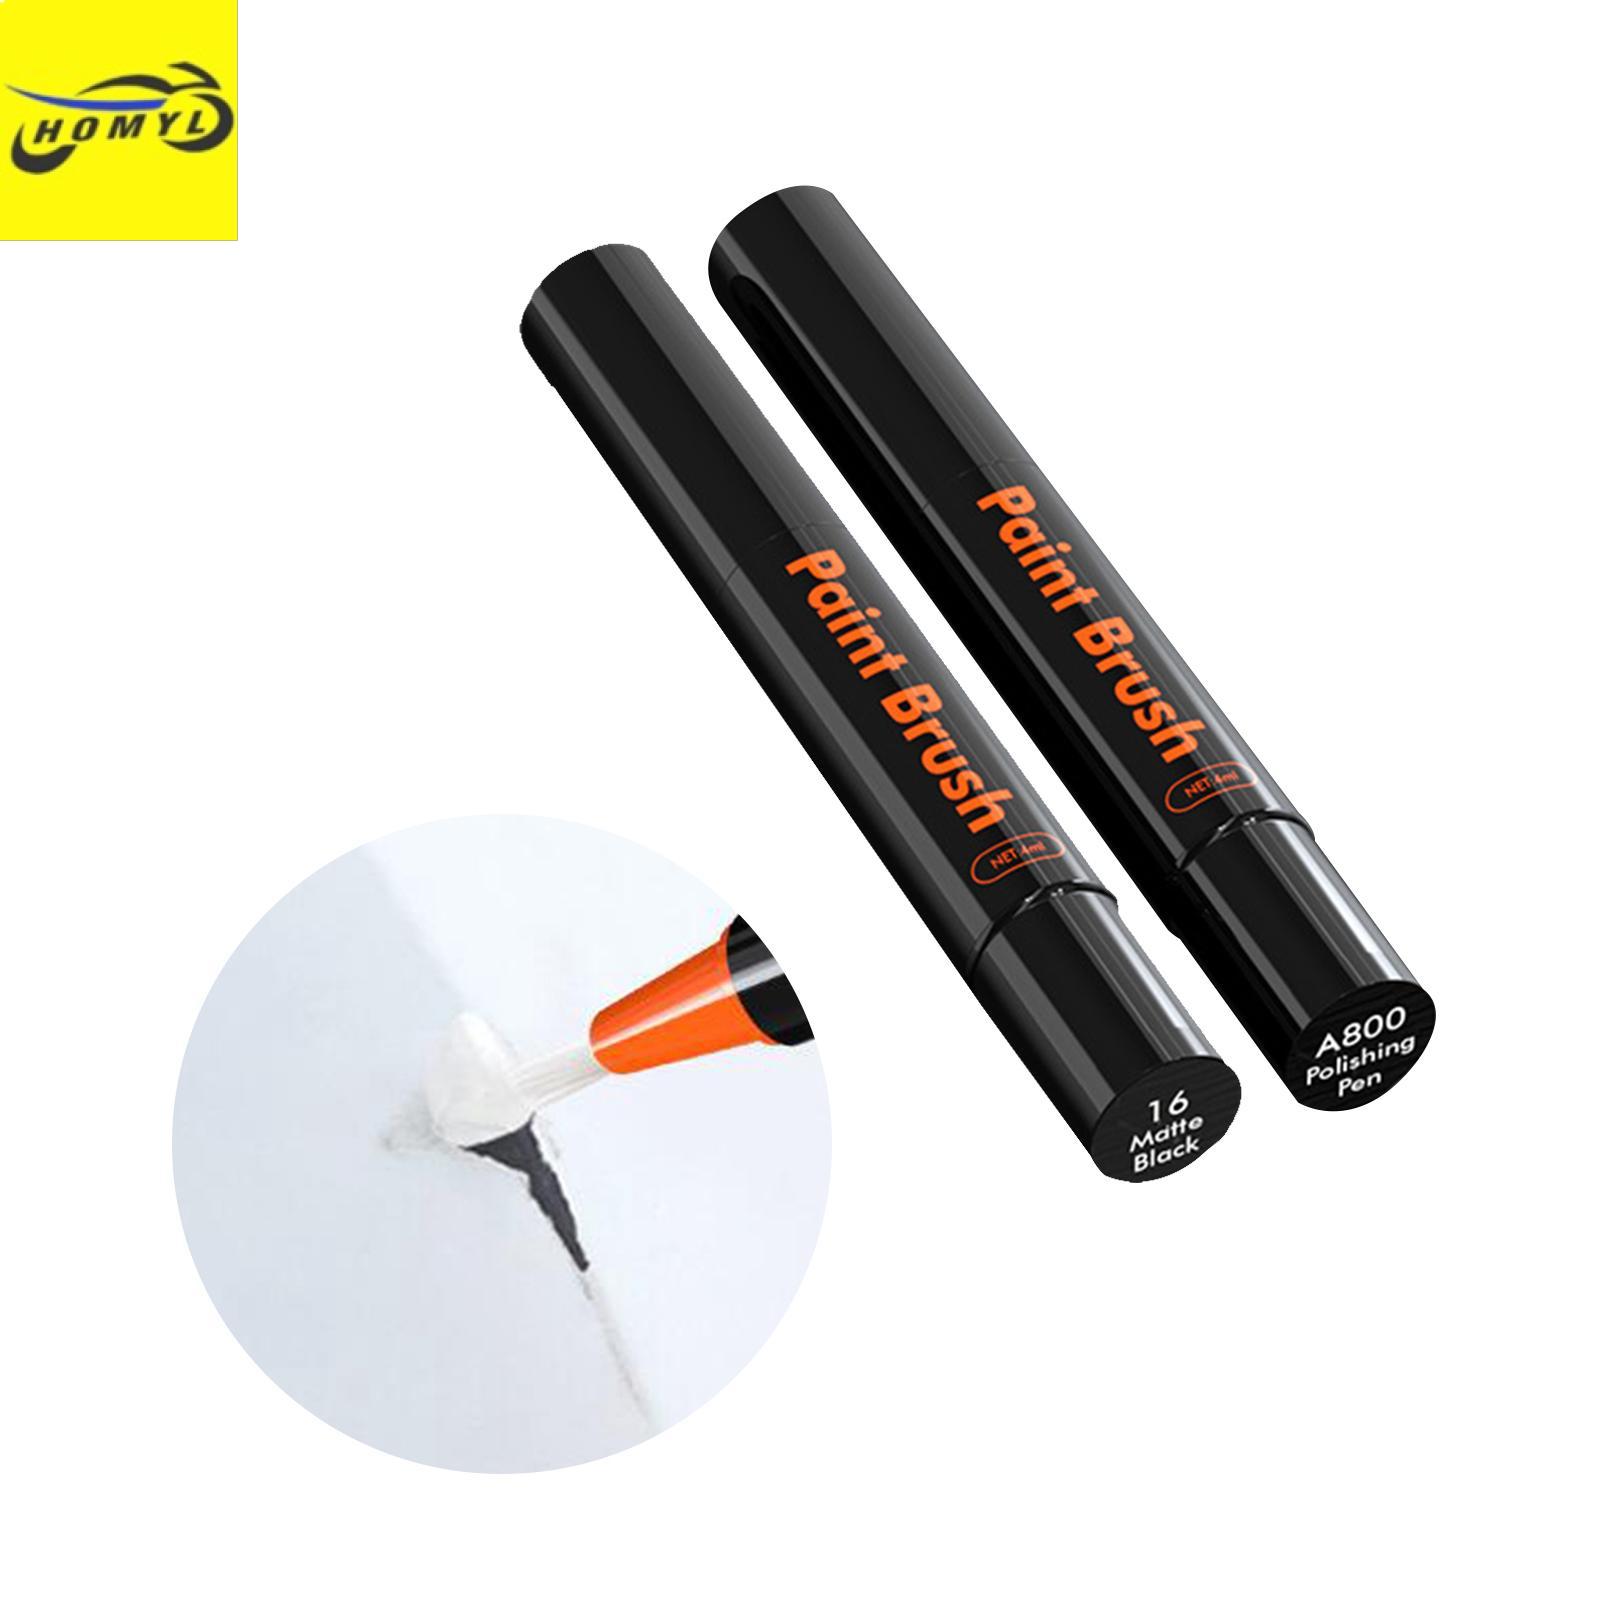 Homyl Car Touch up Paint Pen Accessory Scratch Remover Erase Car Scratches  Durable Matte Black